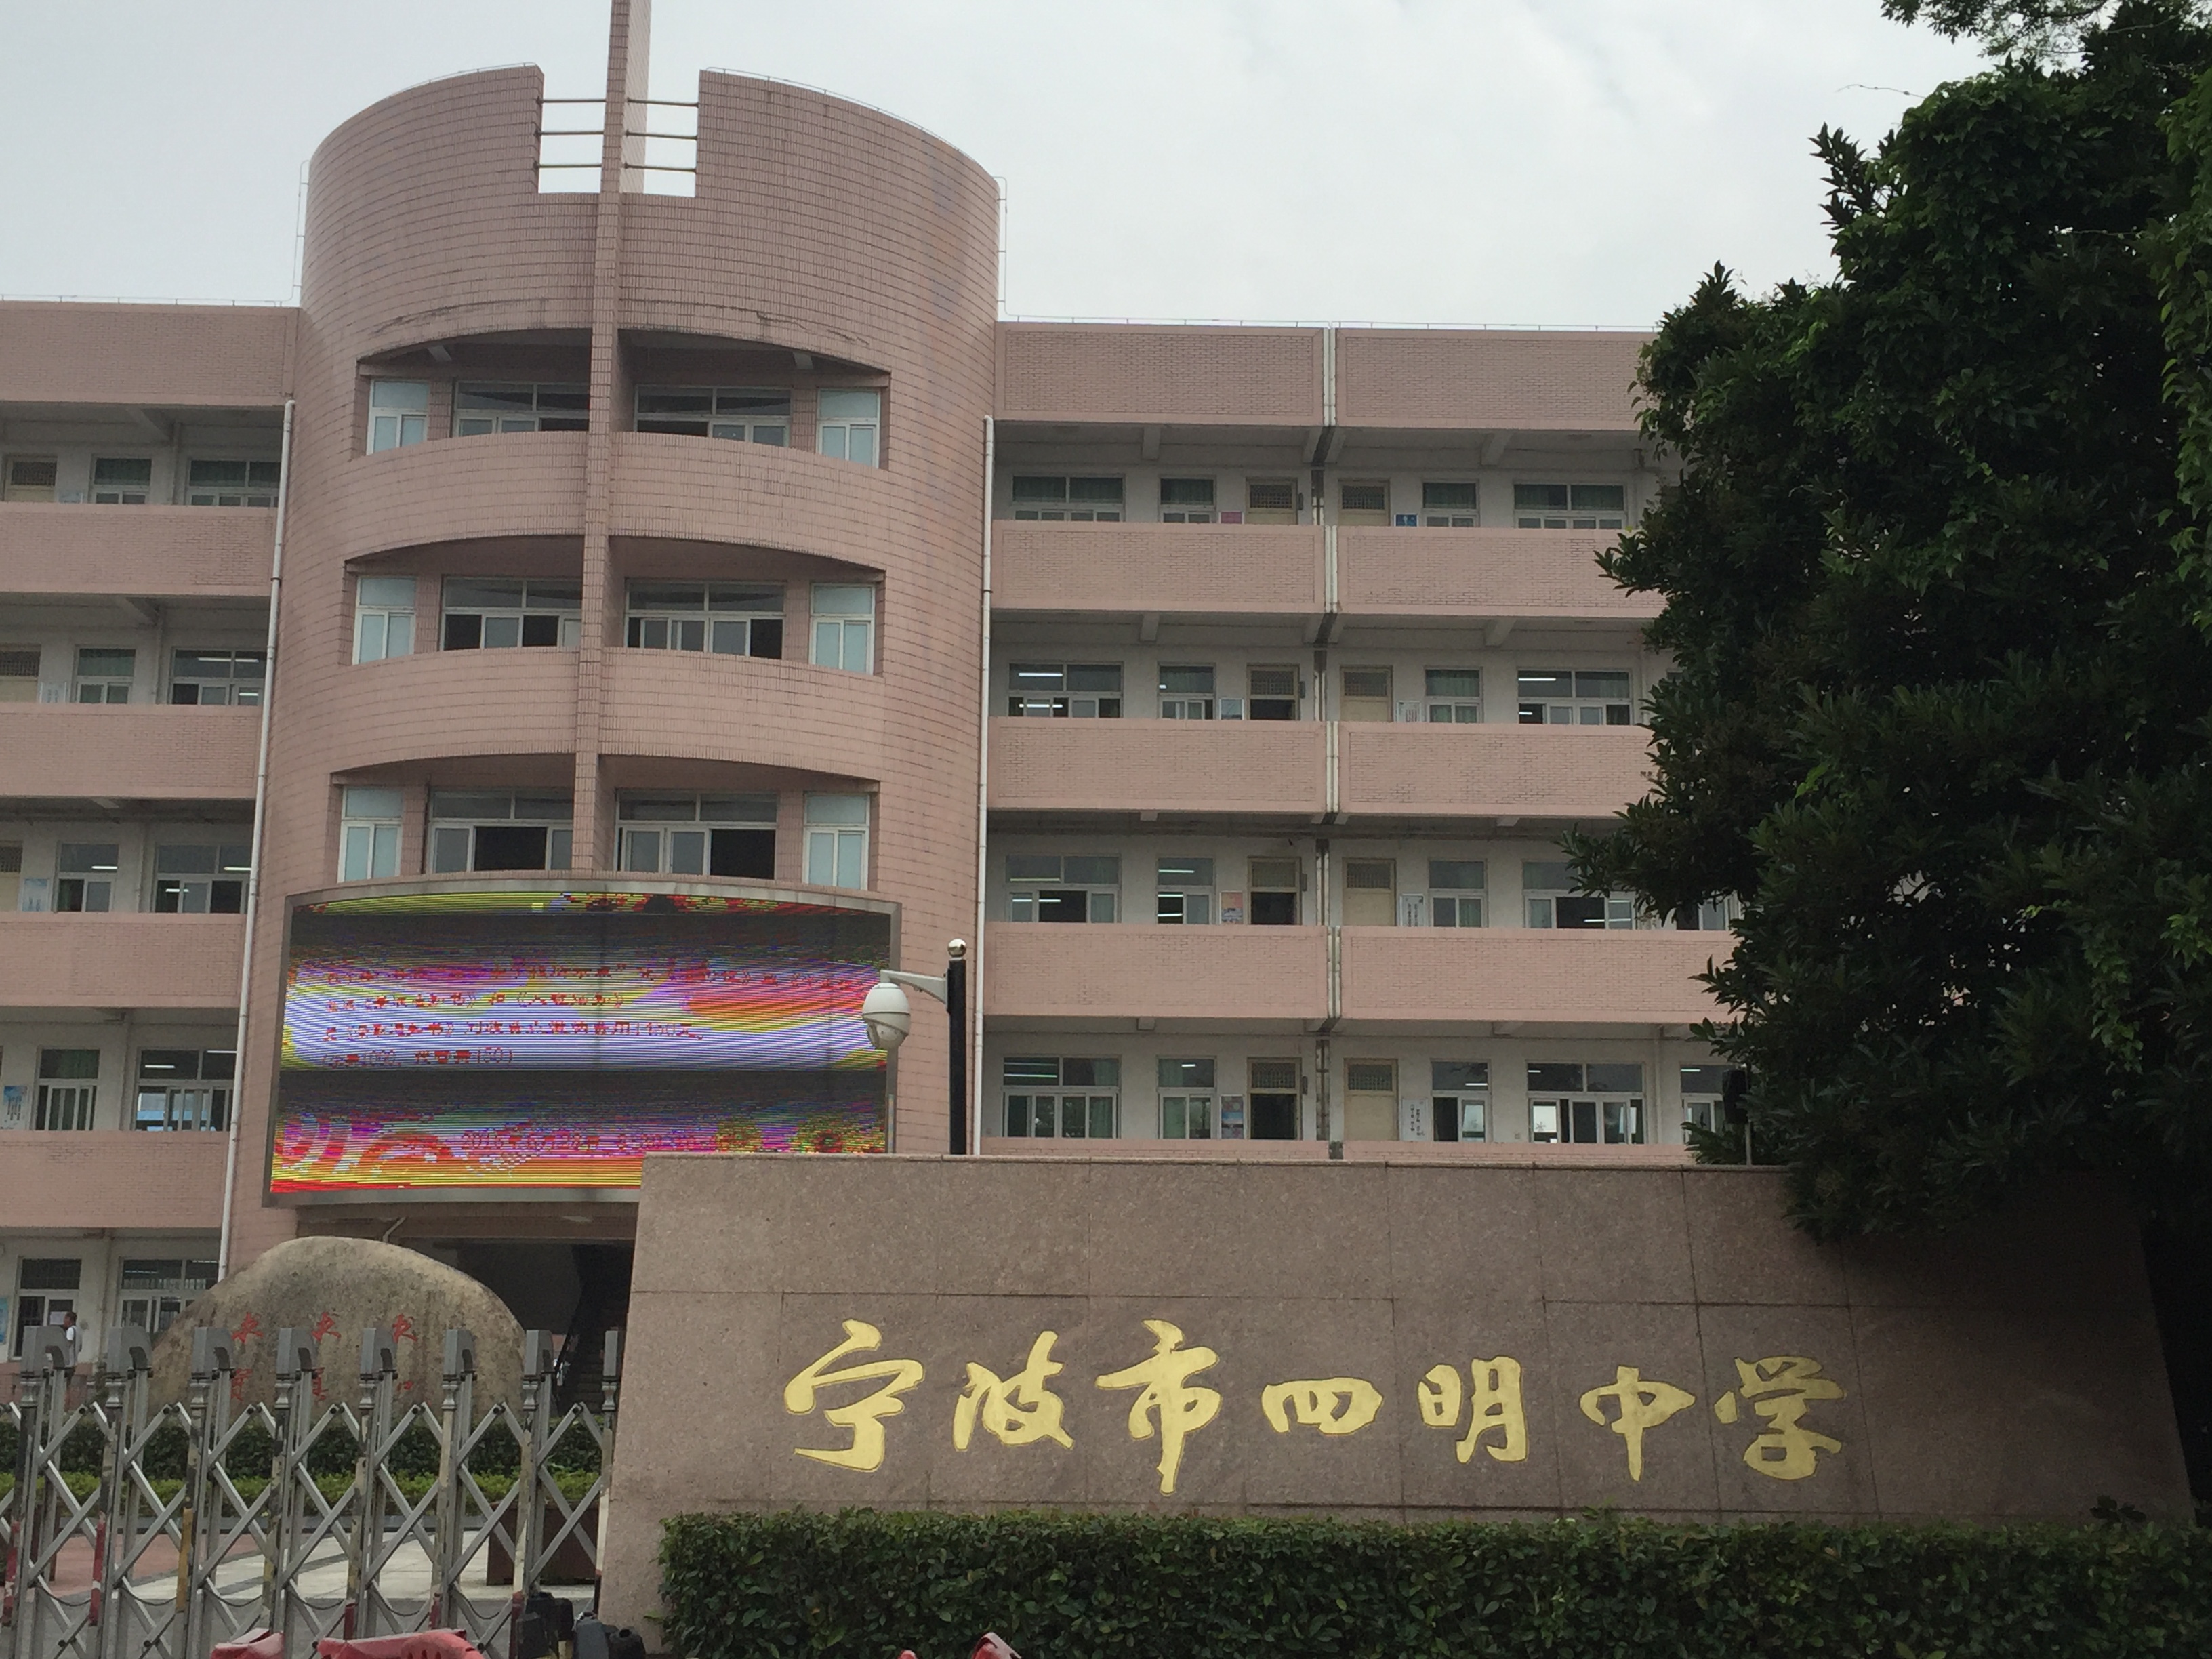 我和省教研员管光海老师,杭高孙俊老师考察调研了宁波四明中学,为该校